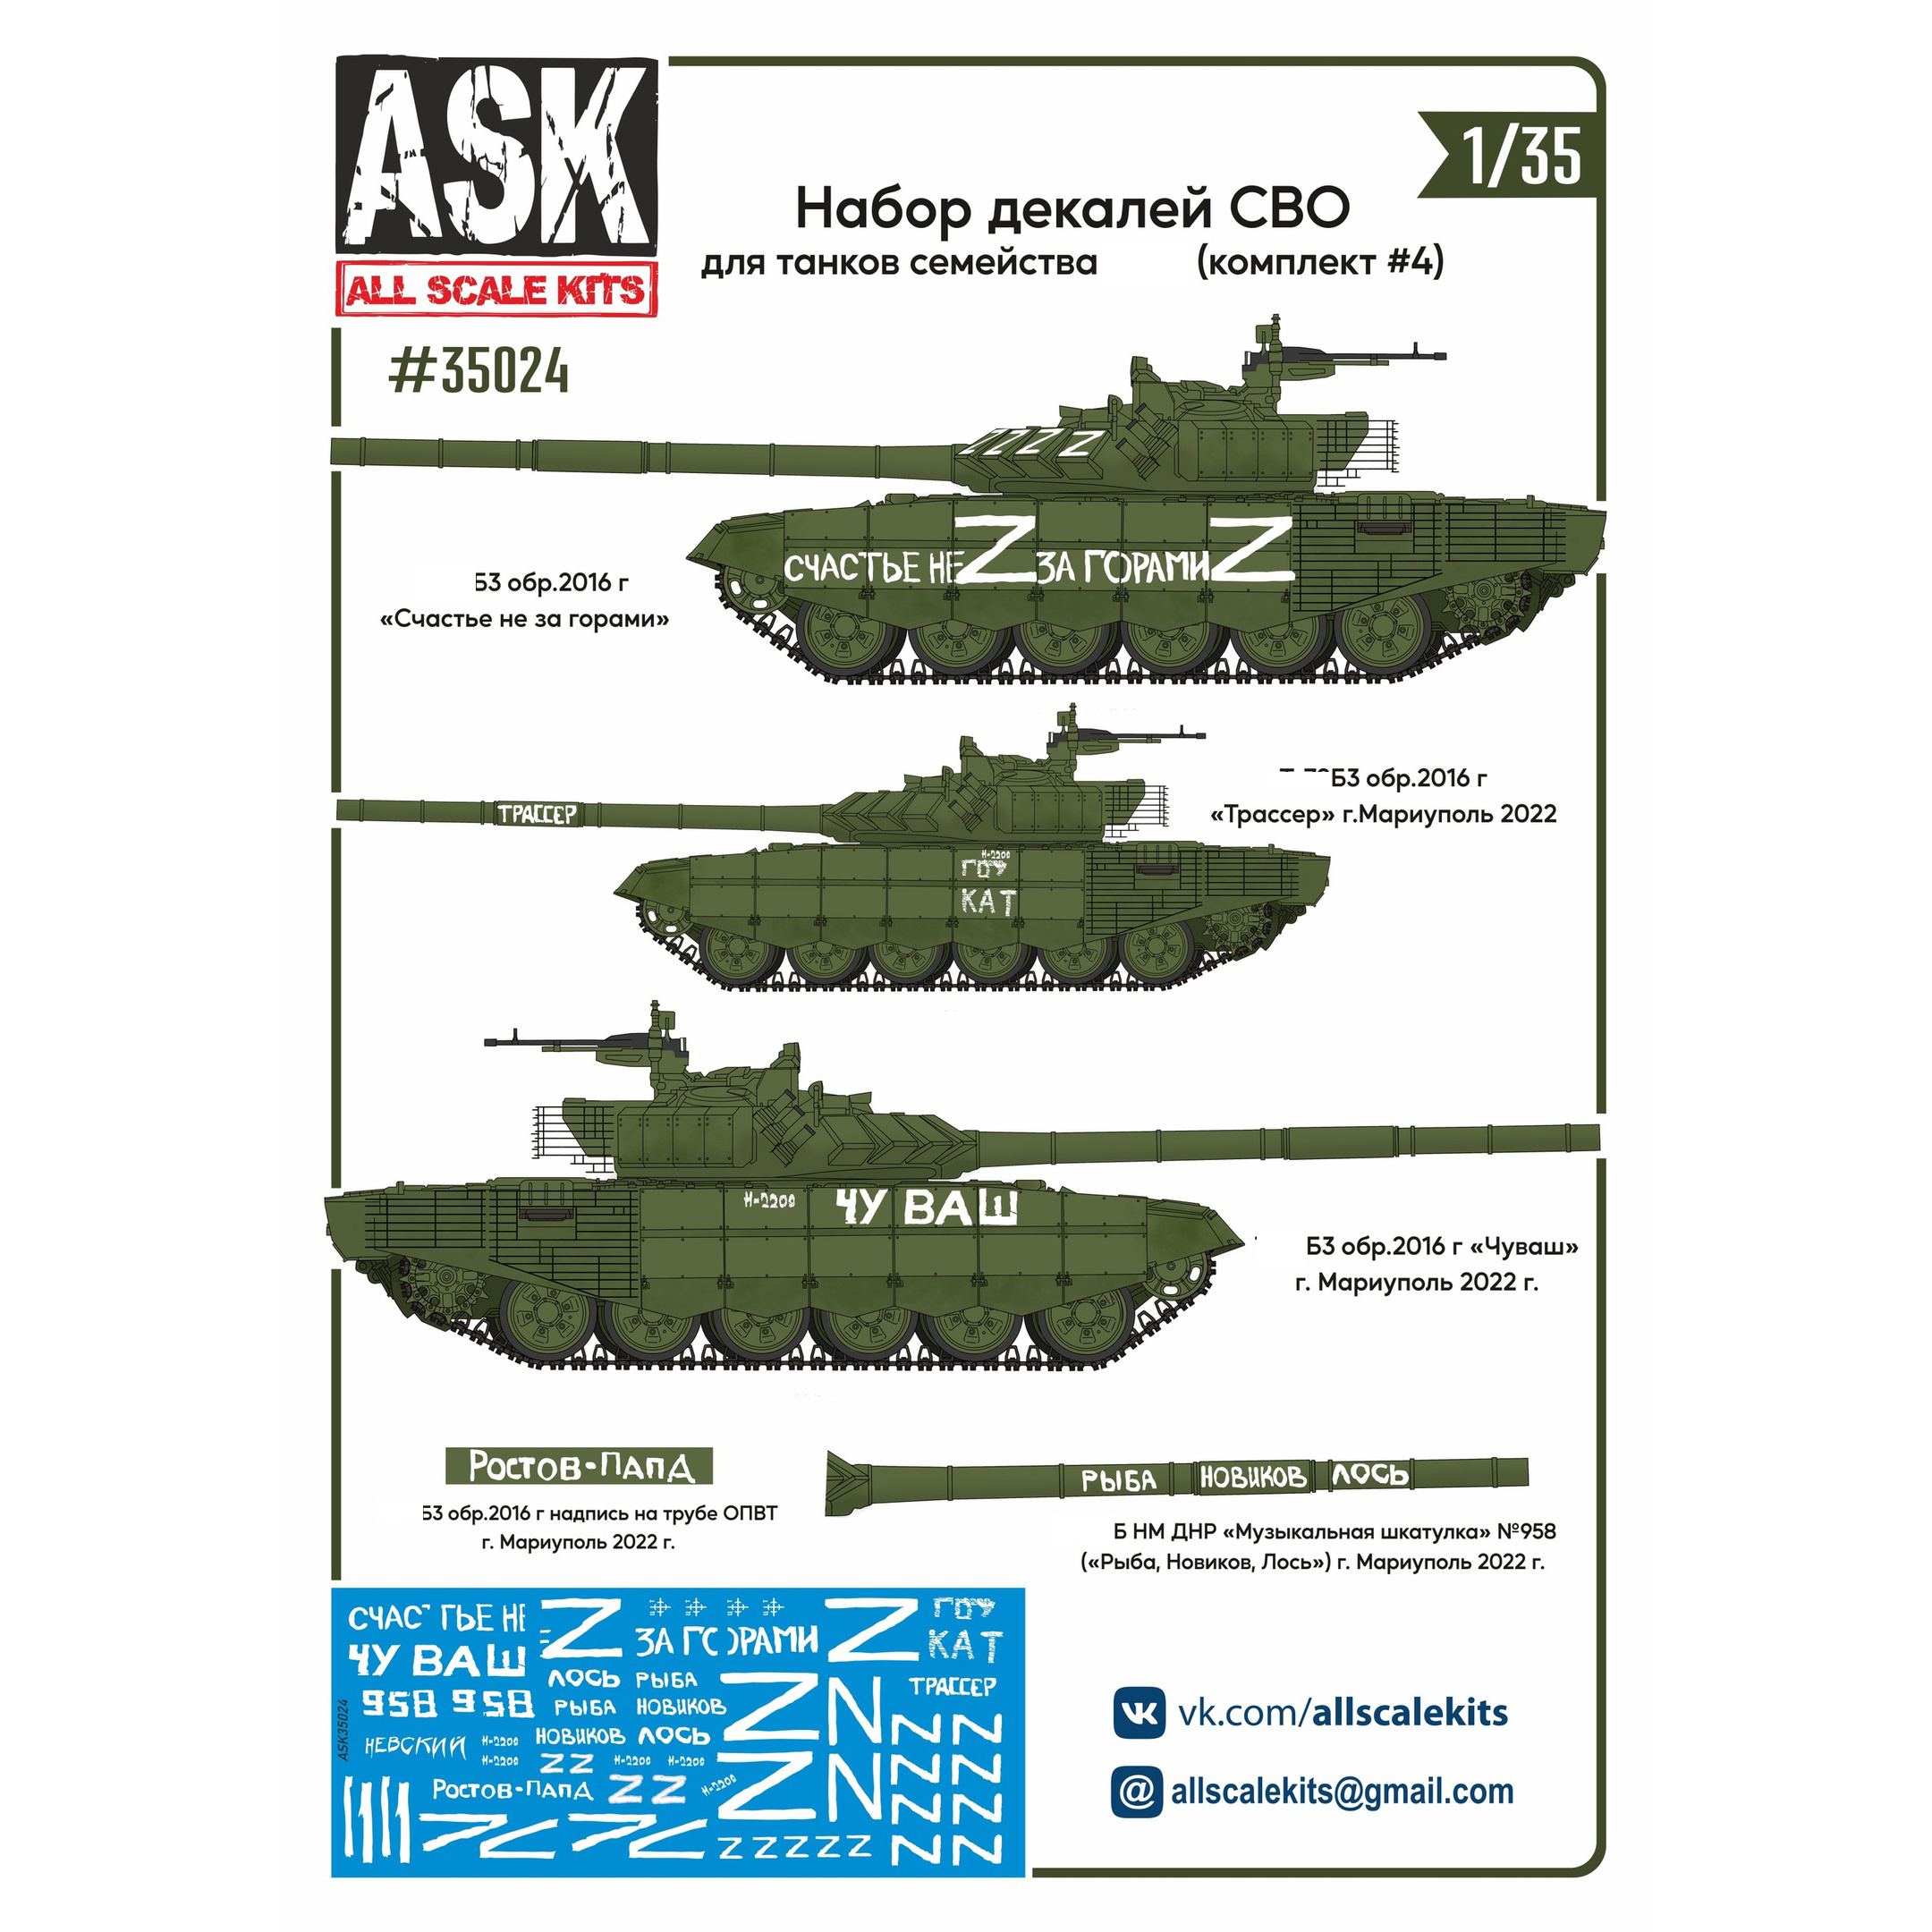 ASK35024 All Scale Kits (ASK) 1/35 Набор декалей СВО (для танков семейства Семьдесят второй, 